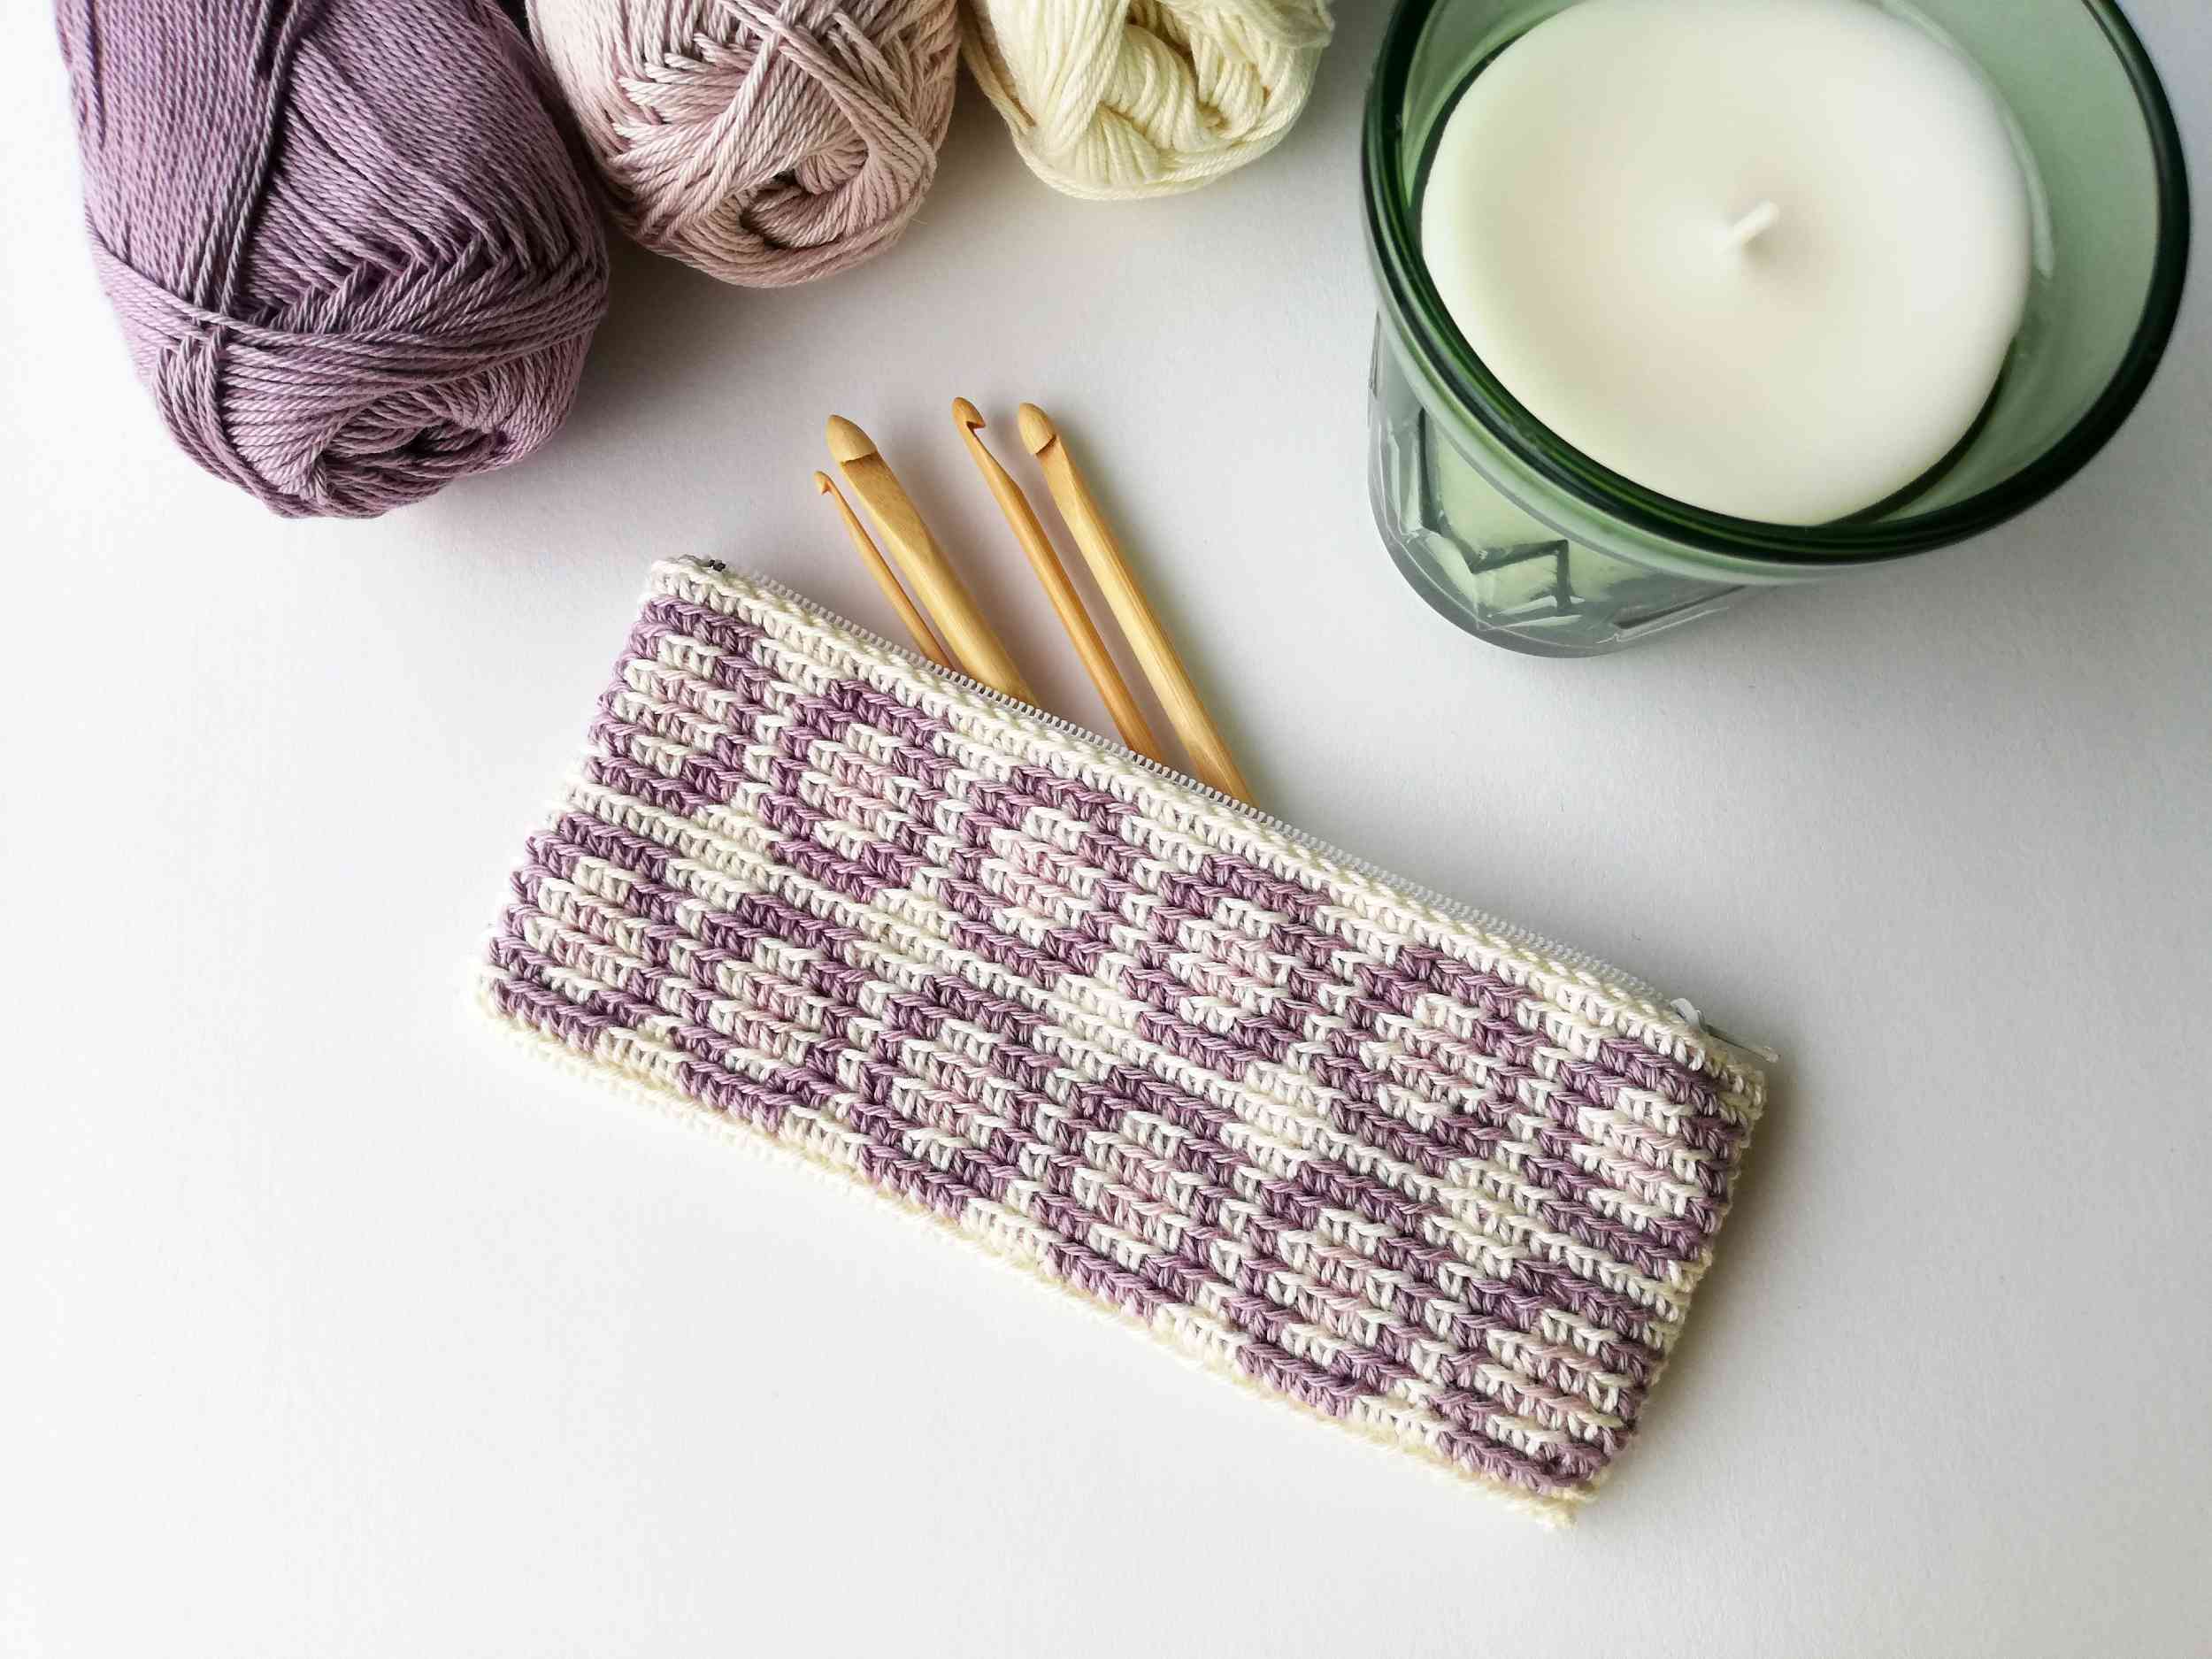 Circles crochet pouch with a zipper